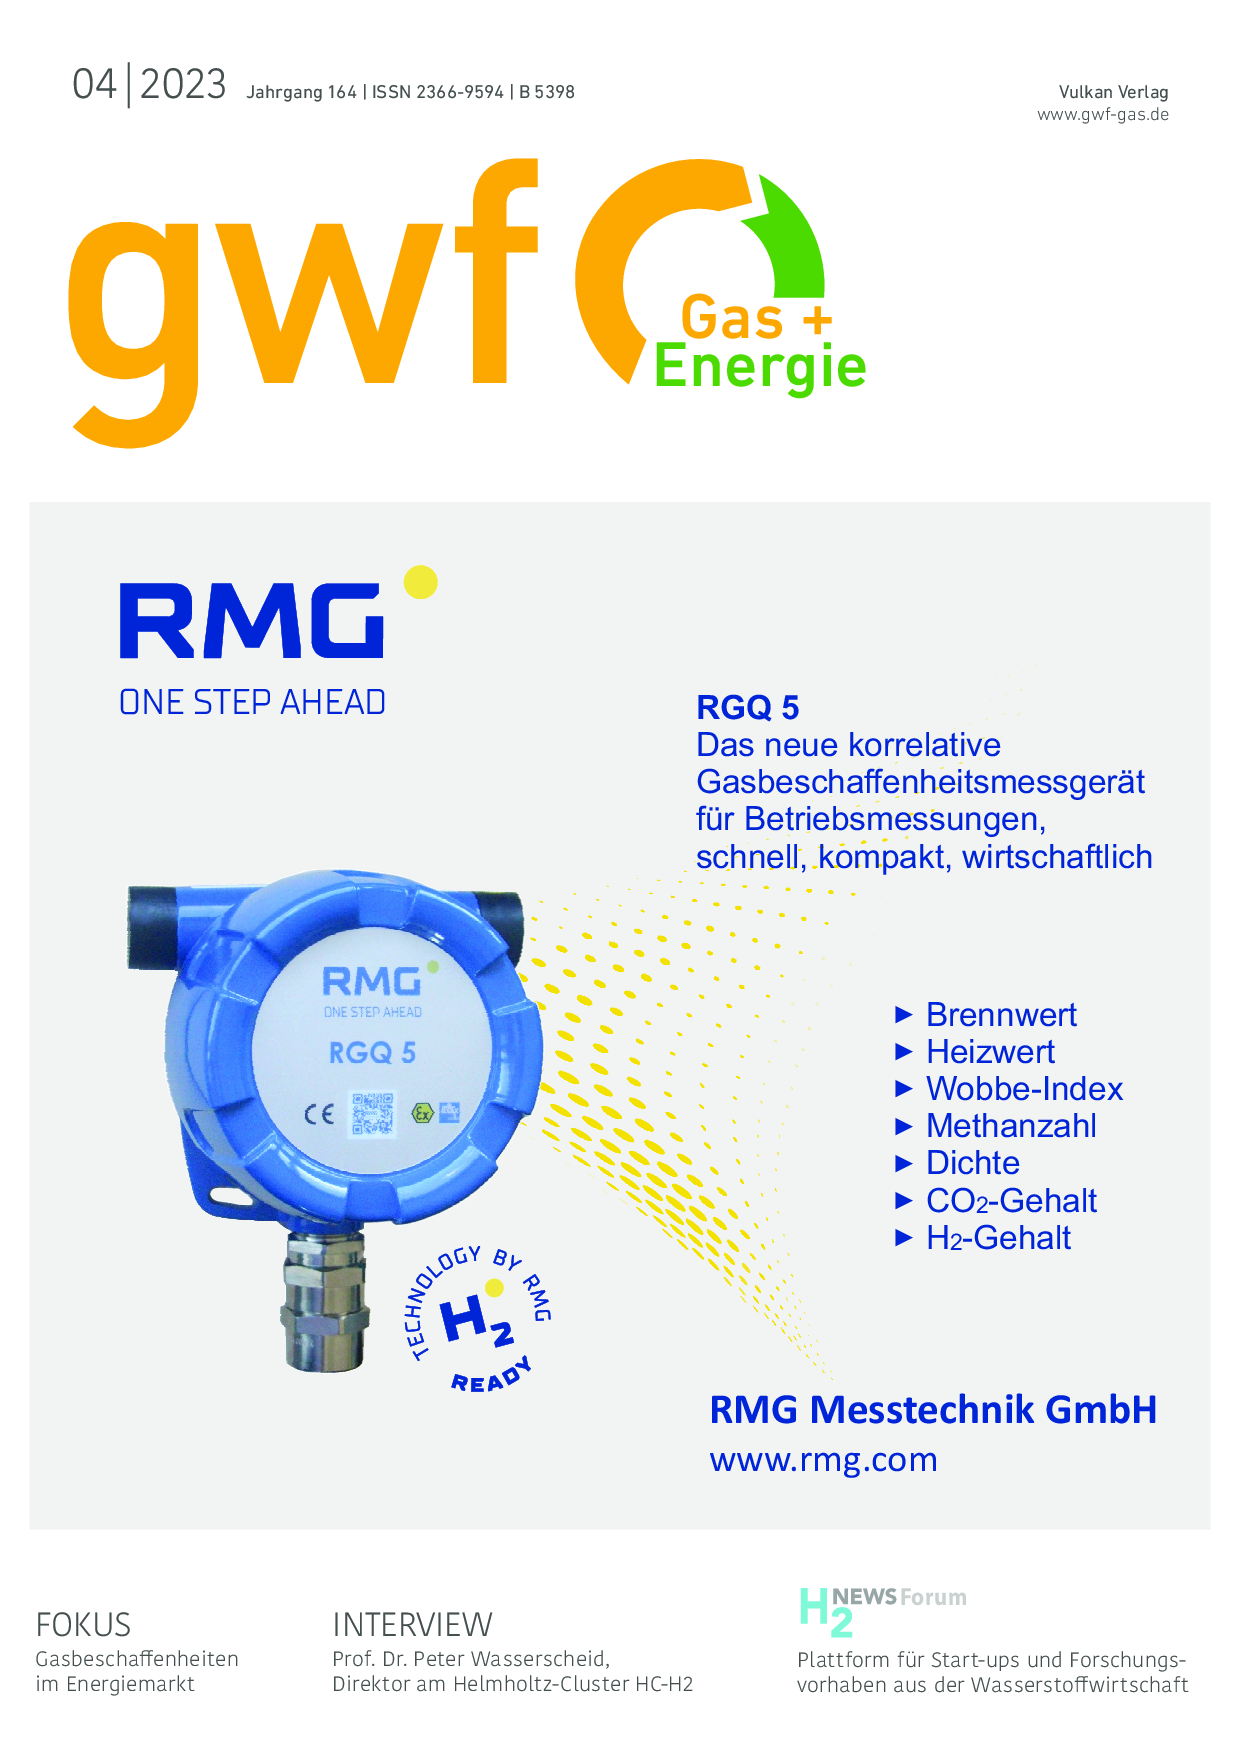 gwf Gas+Energie - 04 2023